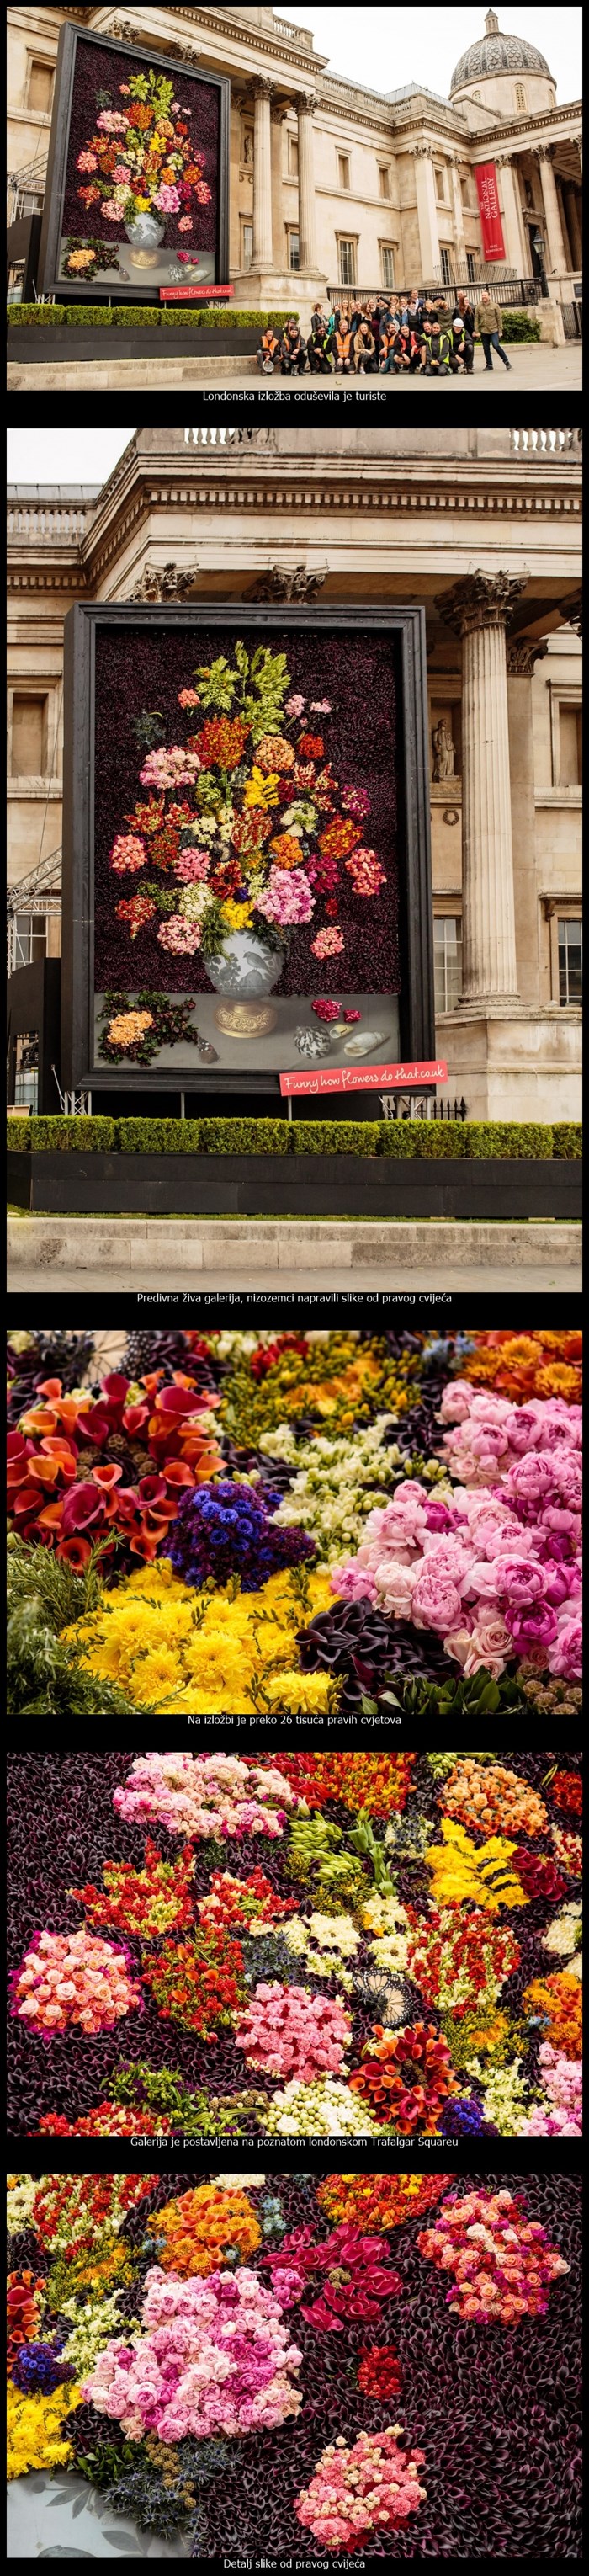 Ogromna galerija slika od pravog cvijeća oduševila London i njegove turiste